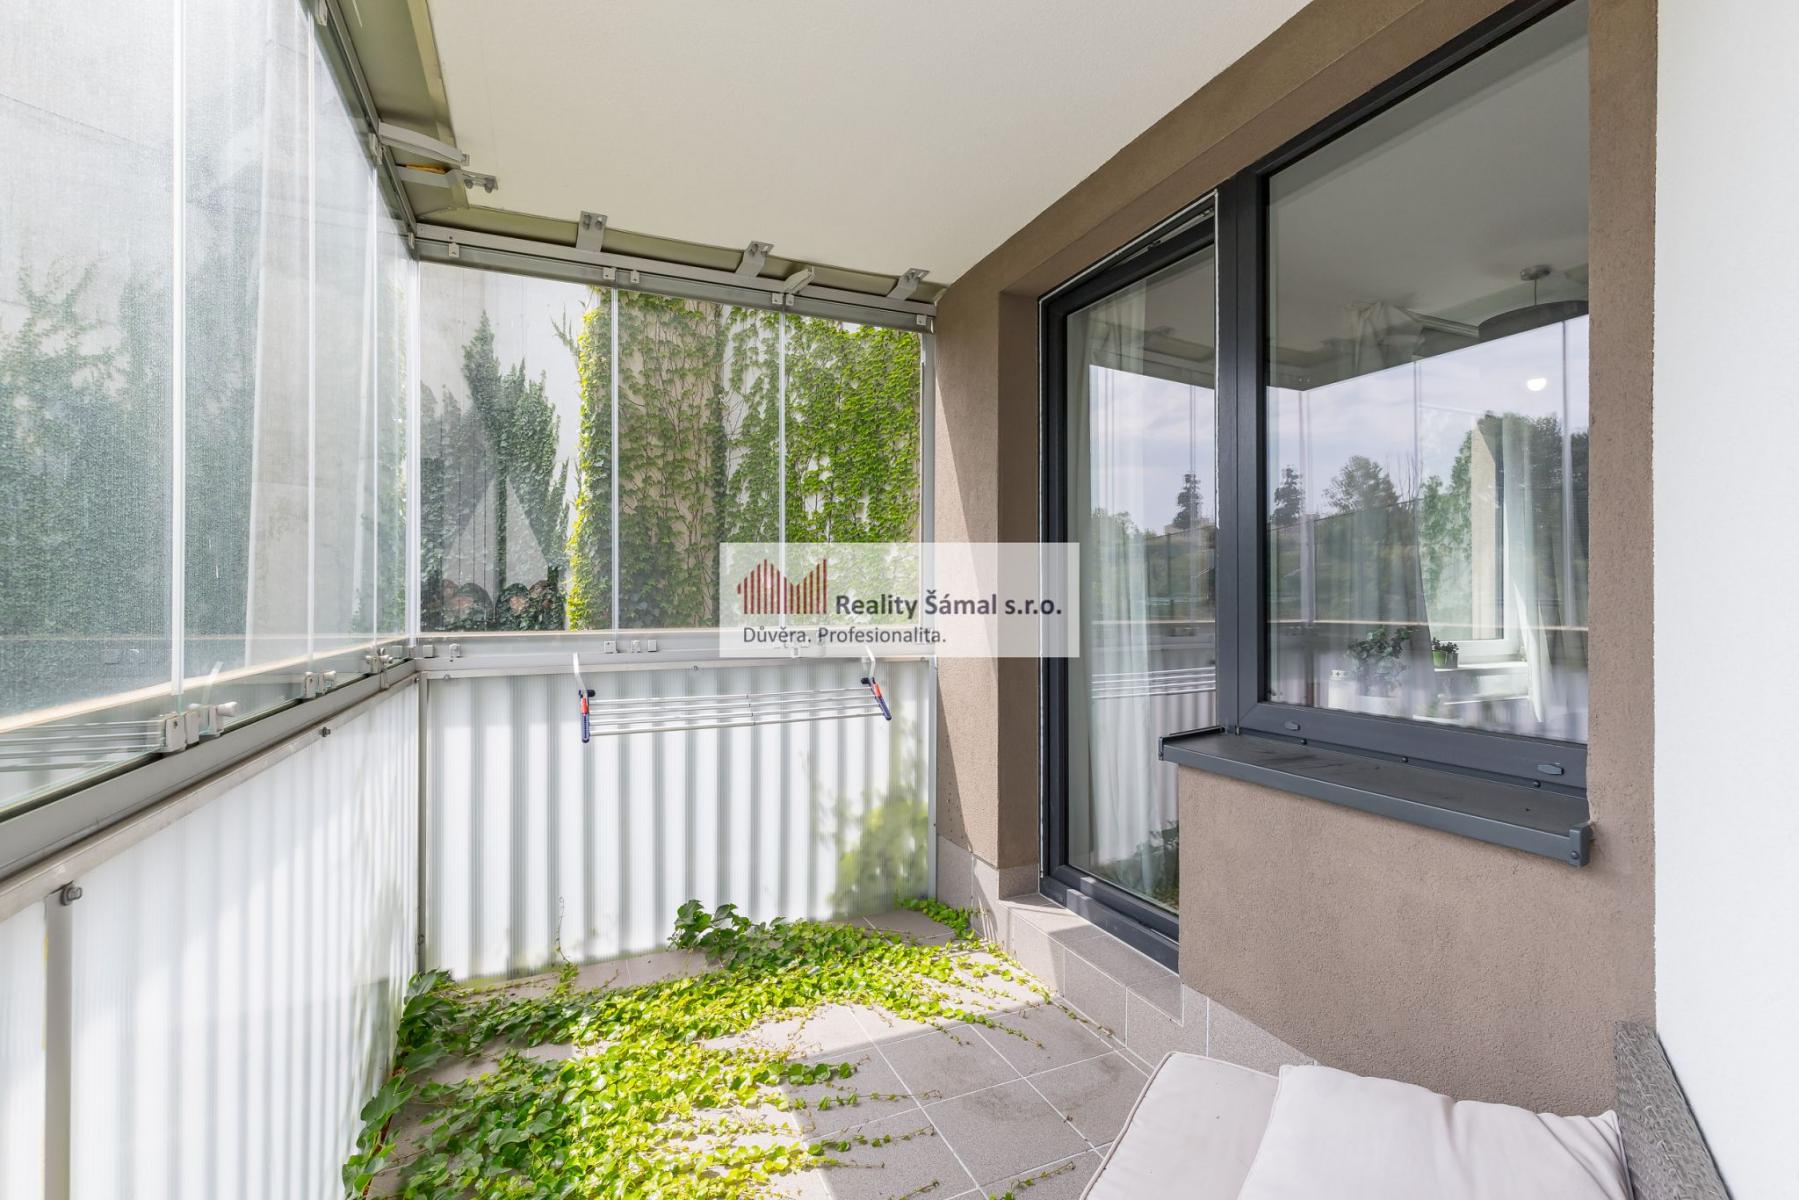 Prostorný a světlý byt 2+kk s balkónem a lodžií v novostavbě z roku 2016, obrázek č. 2